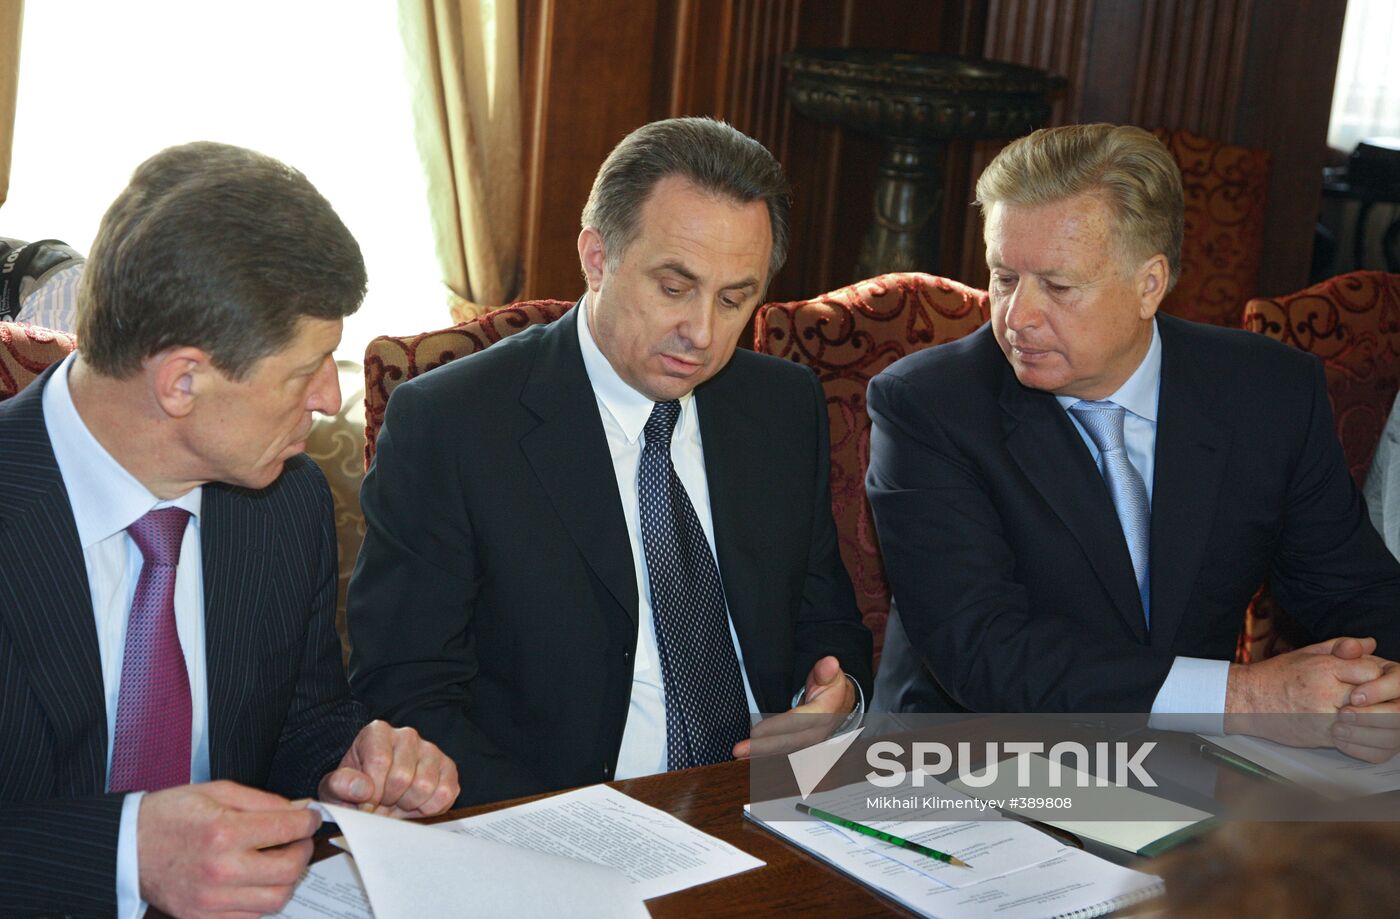 Dmitry Kozak, Vitaly Mutko and Leonid Tyagachev